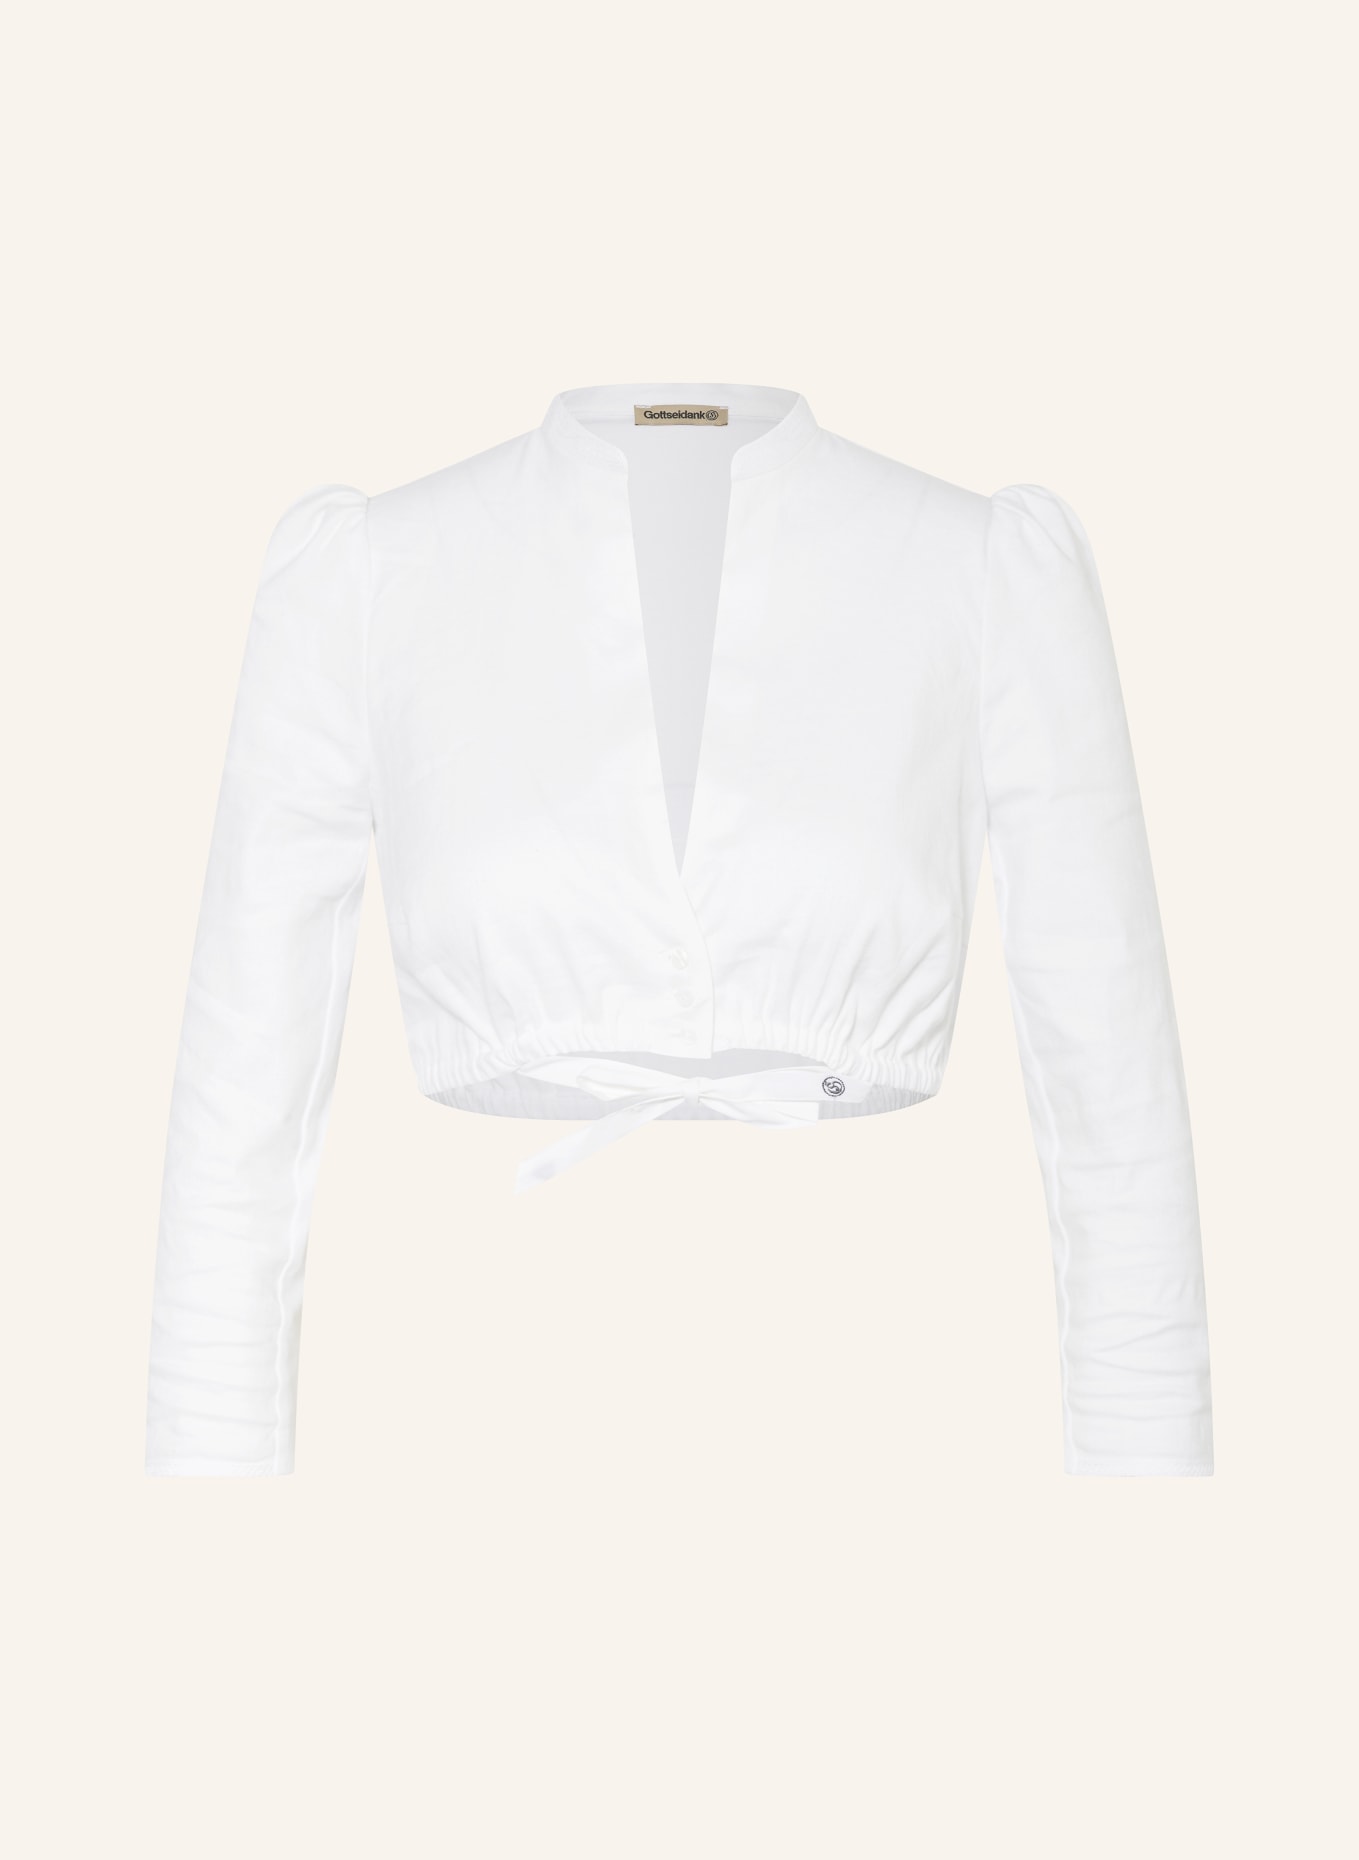 Gottseidank Dirndl blouse POMPADOUR with linen, Color: 100 reiweiß (Image 1)